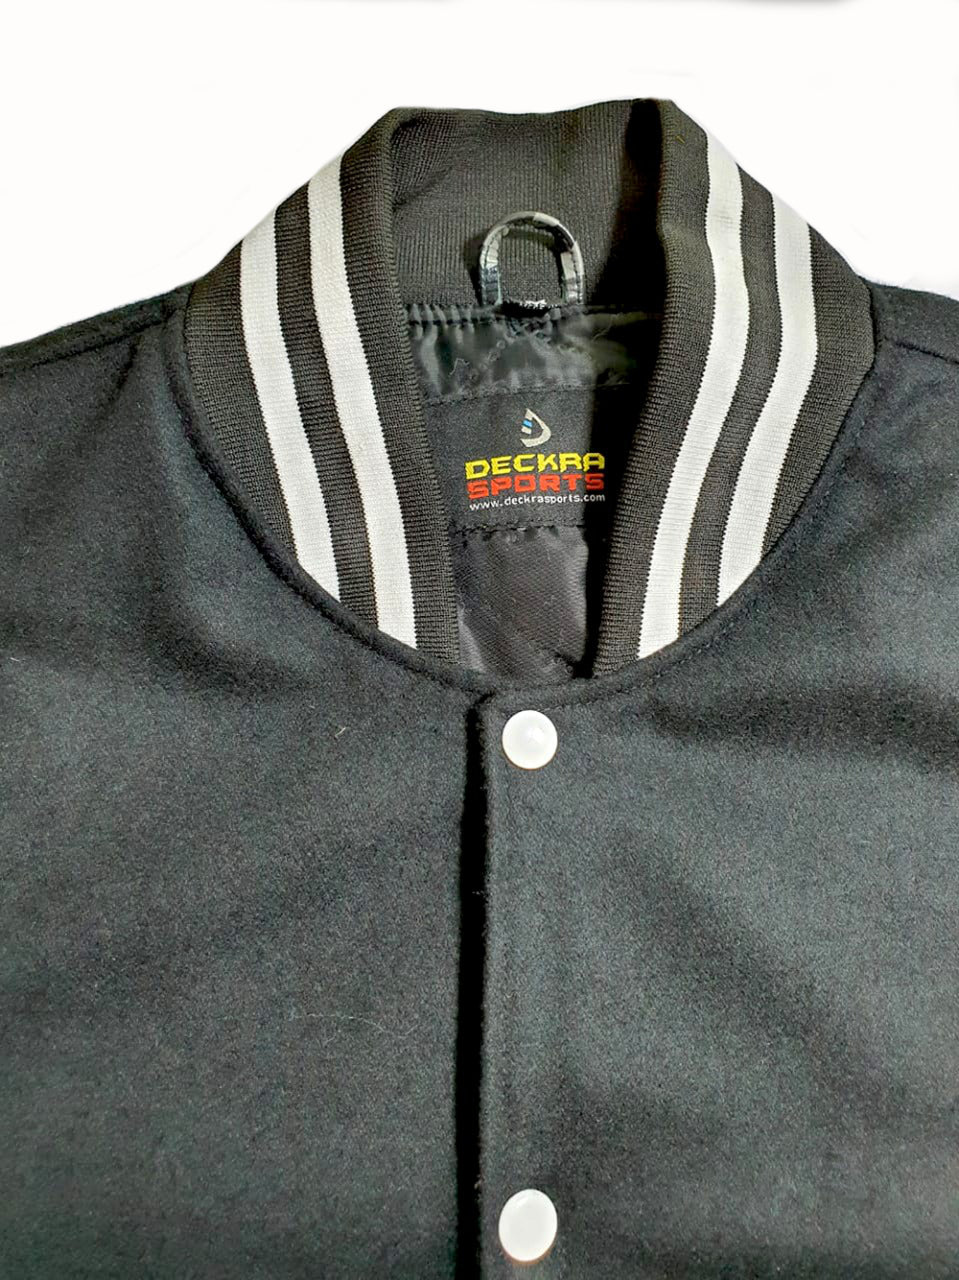 Personalised Varsity Jacket Mens or Womens College Sweatshirt